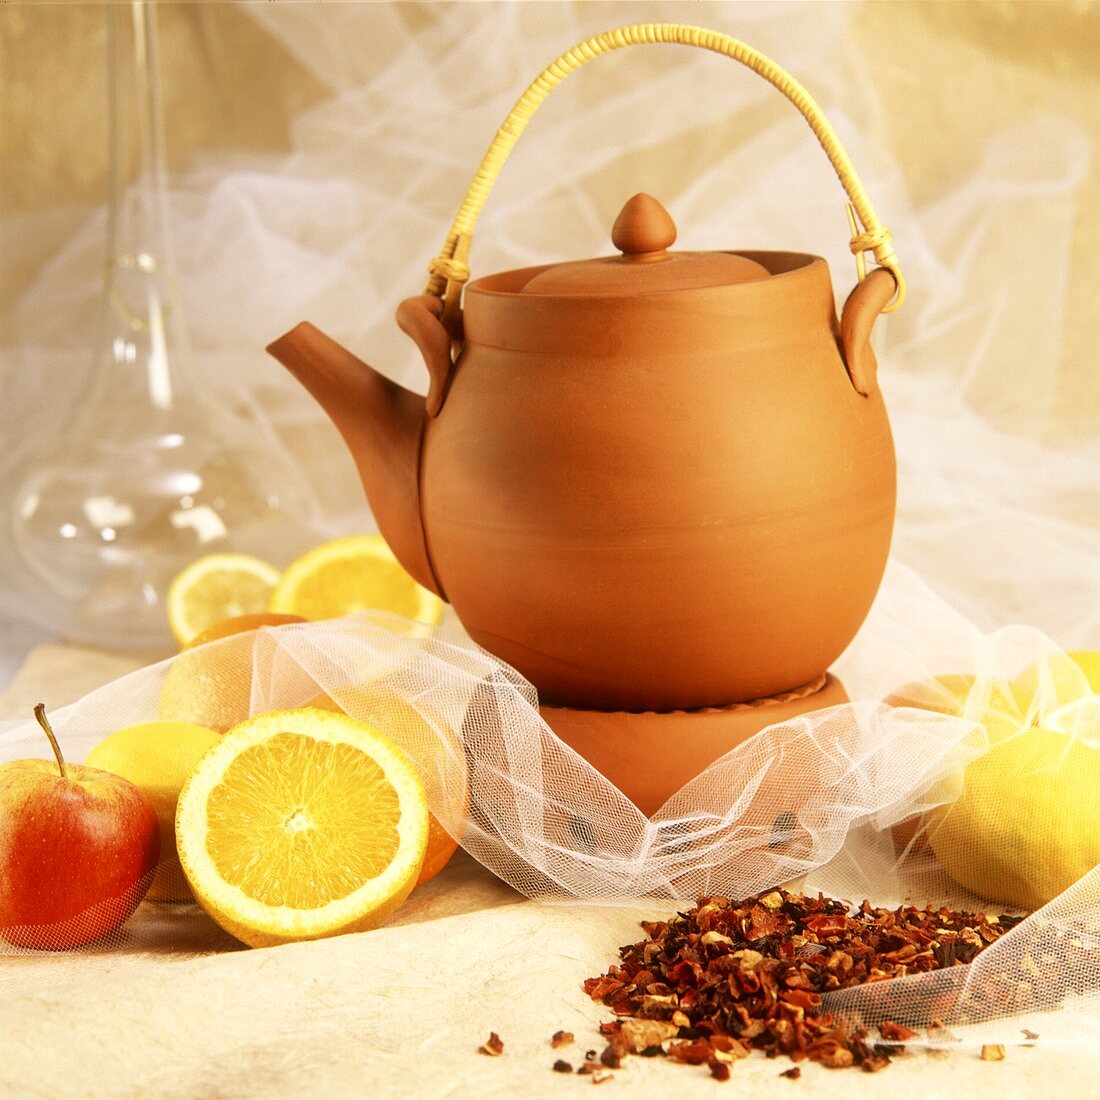 Teekanne aus Ton, daneben Früchtetee, Zitronen und Äpfel